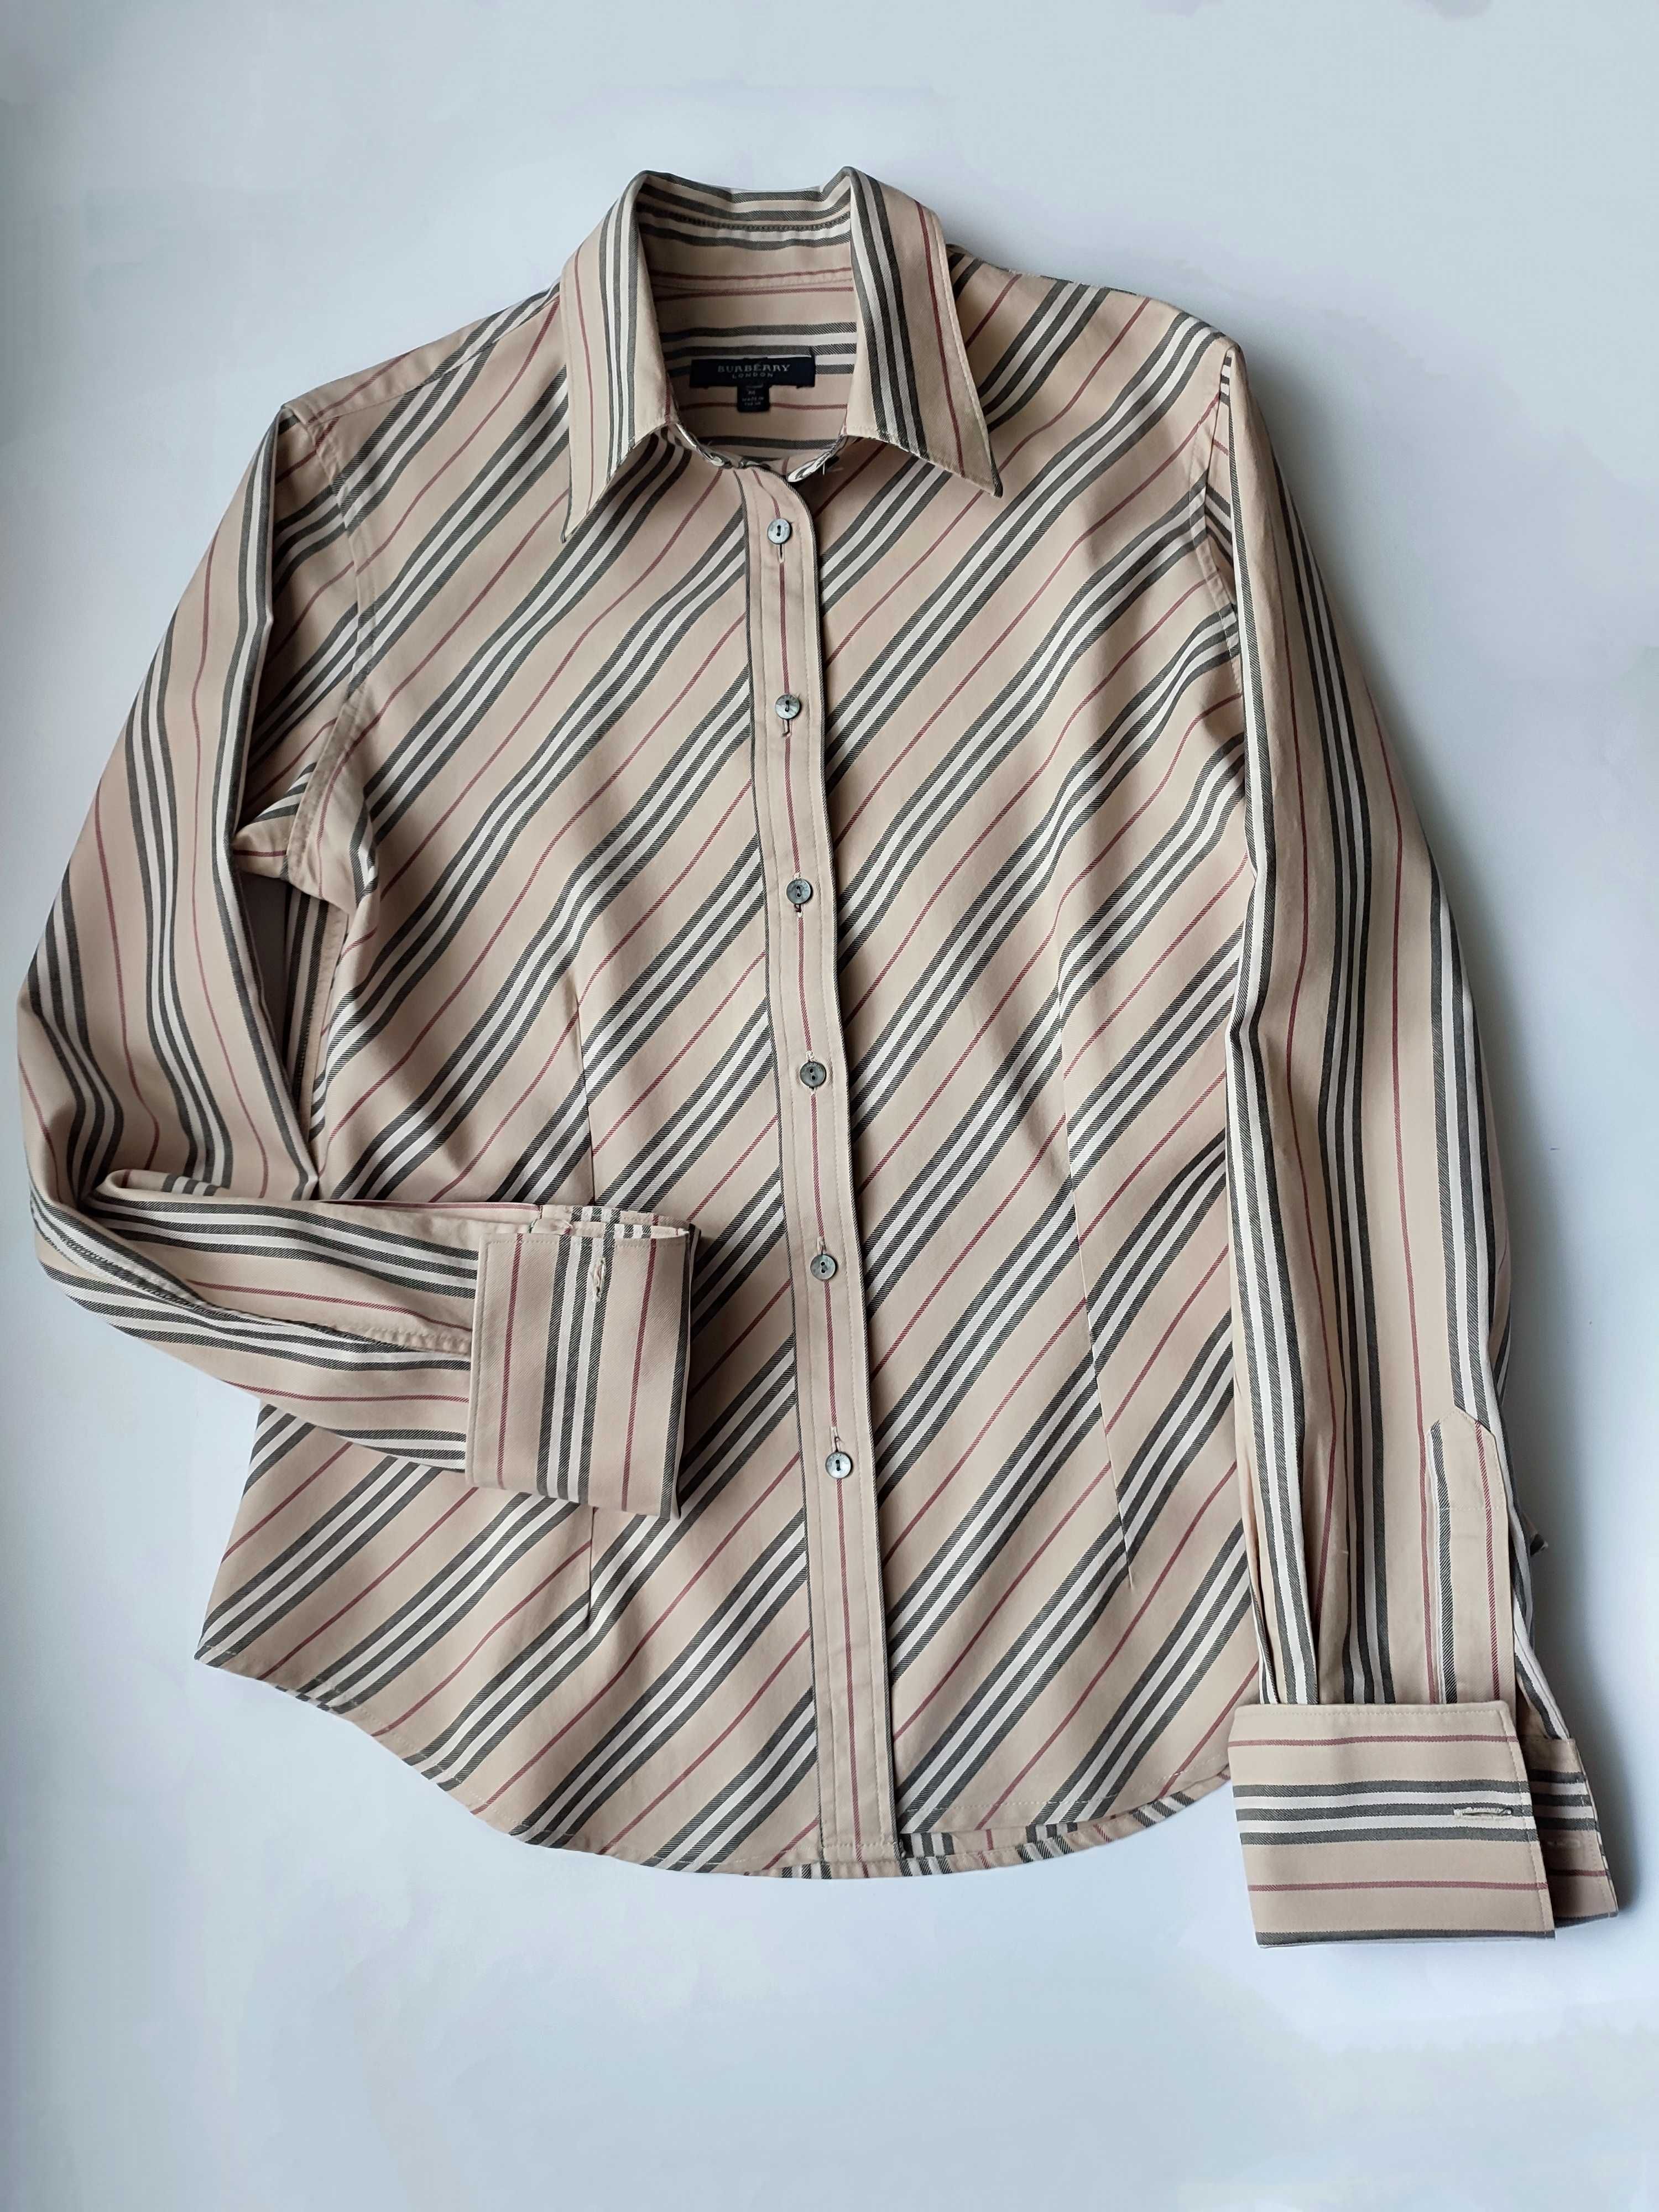 Брендовая рубашка/блузка под запонки класса люкс Burberry оригинал